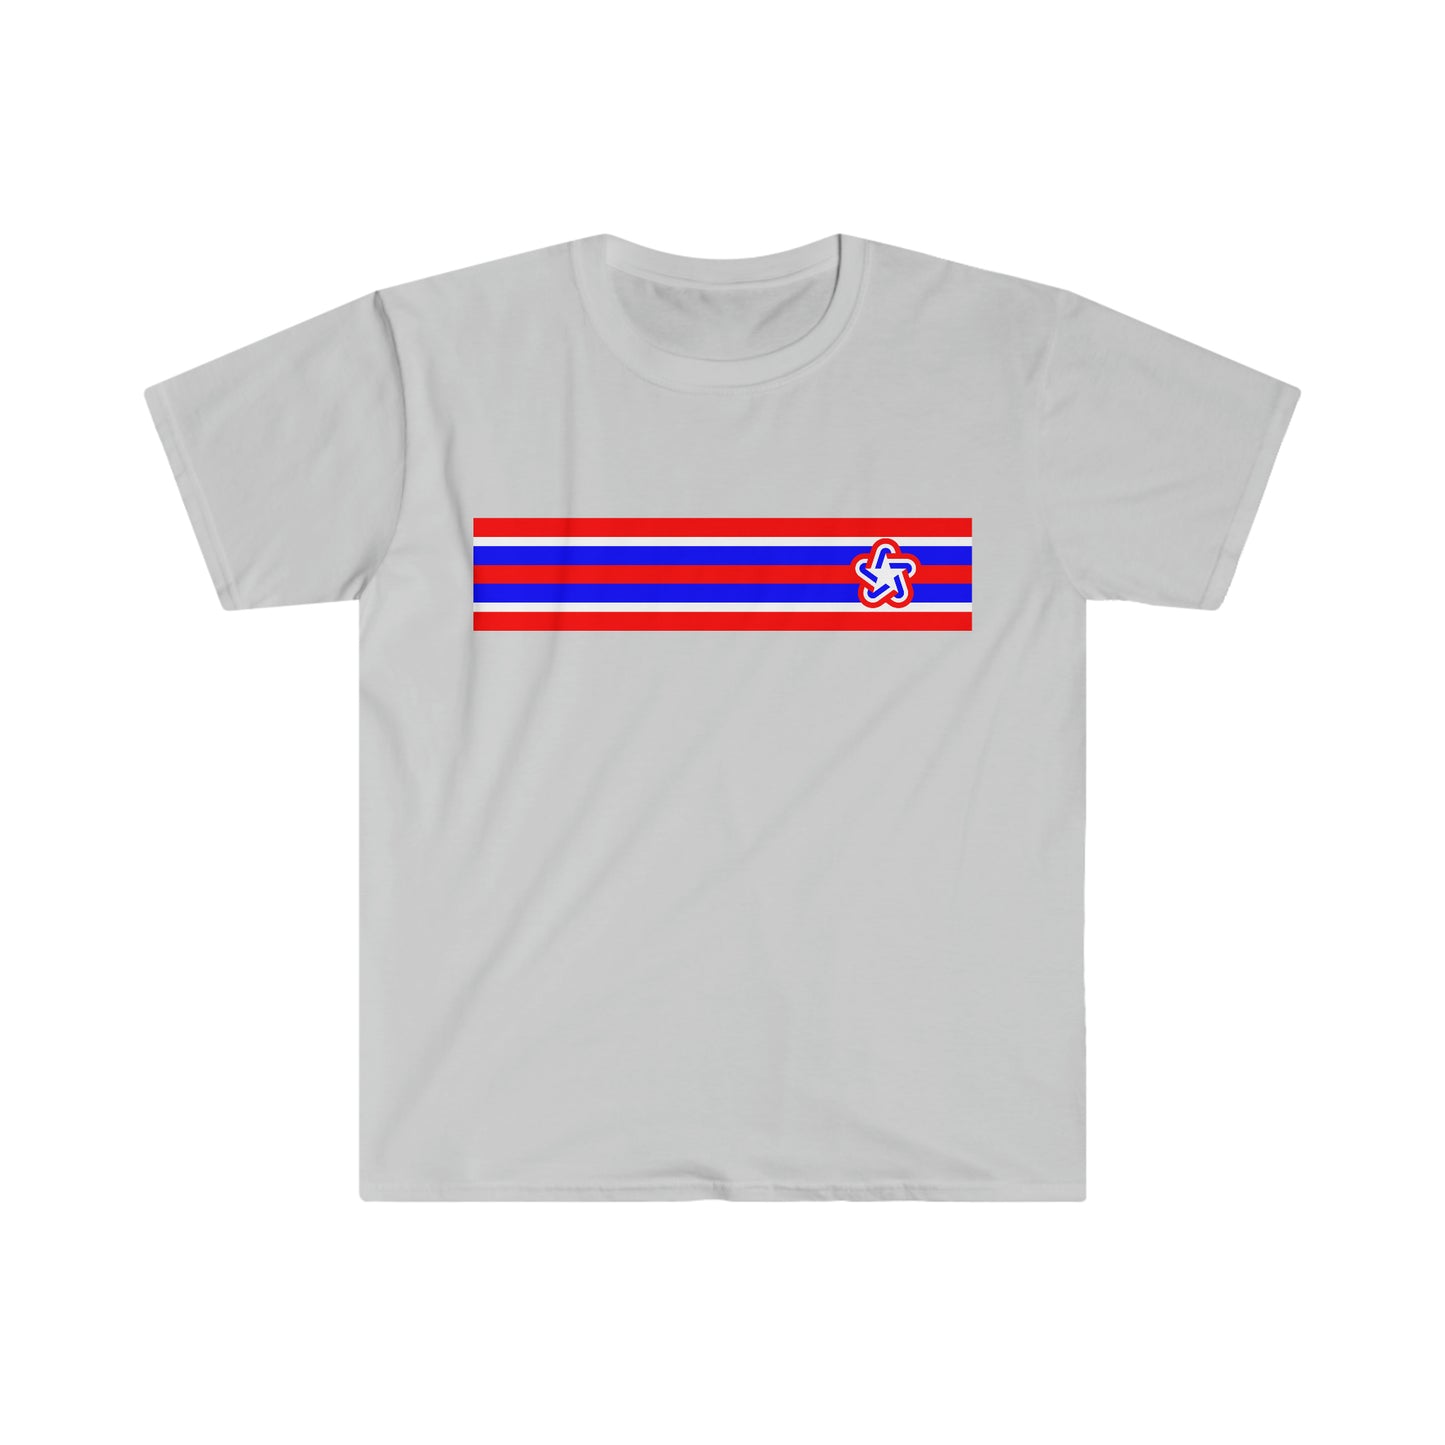 USA Bicentennial Star Stripe - T-Shirt